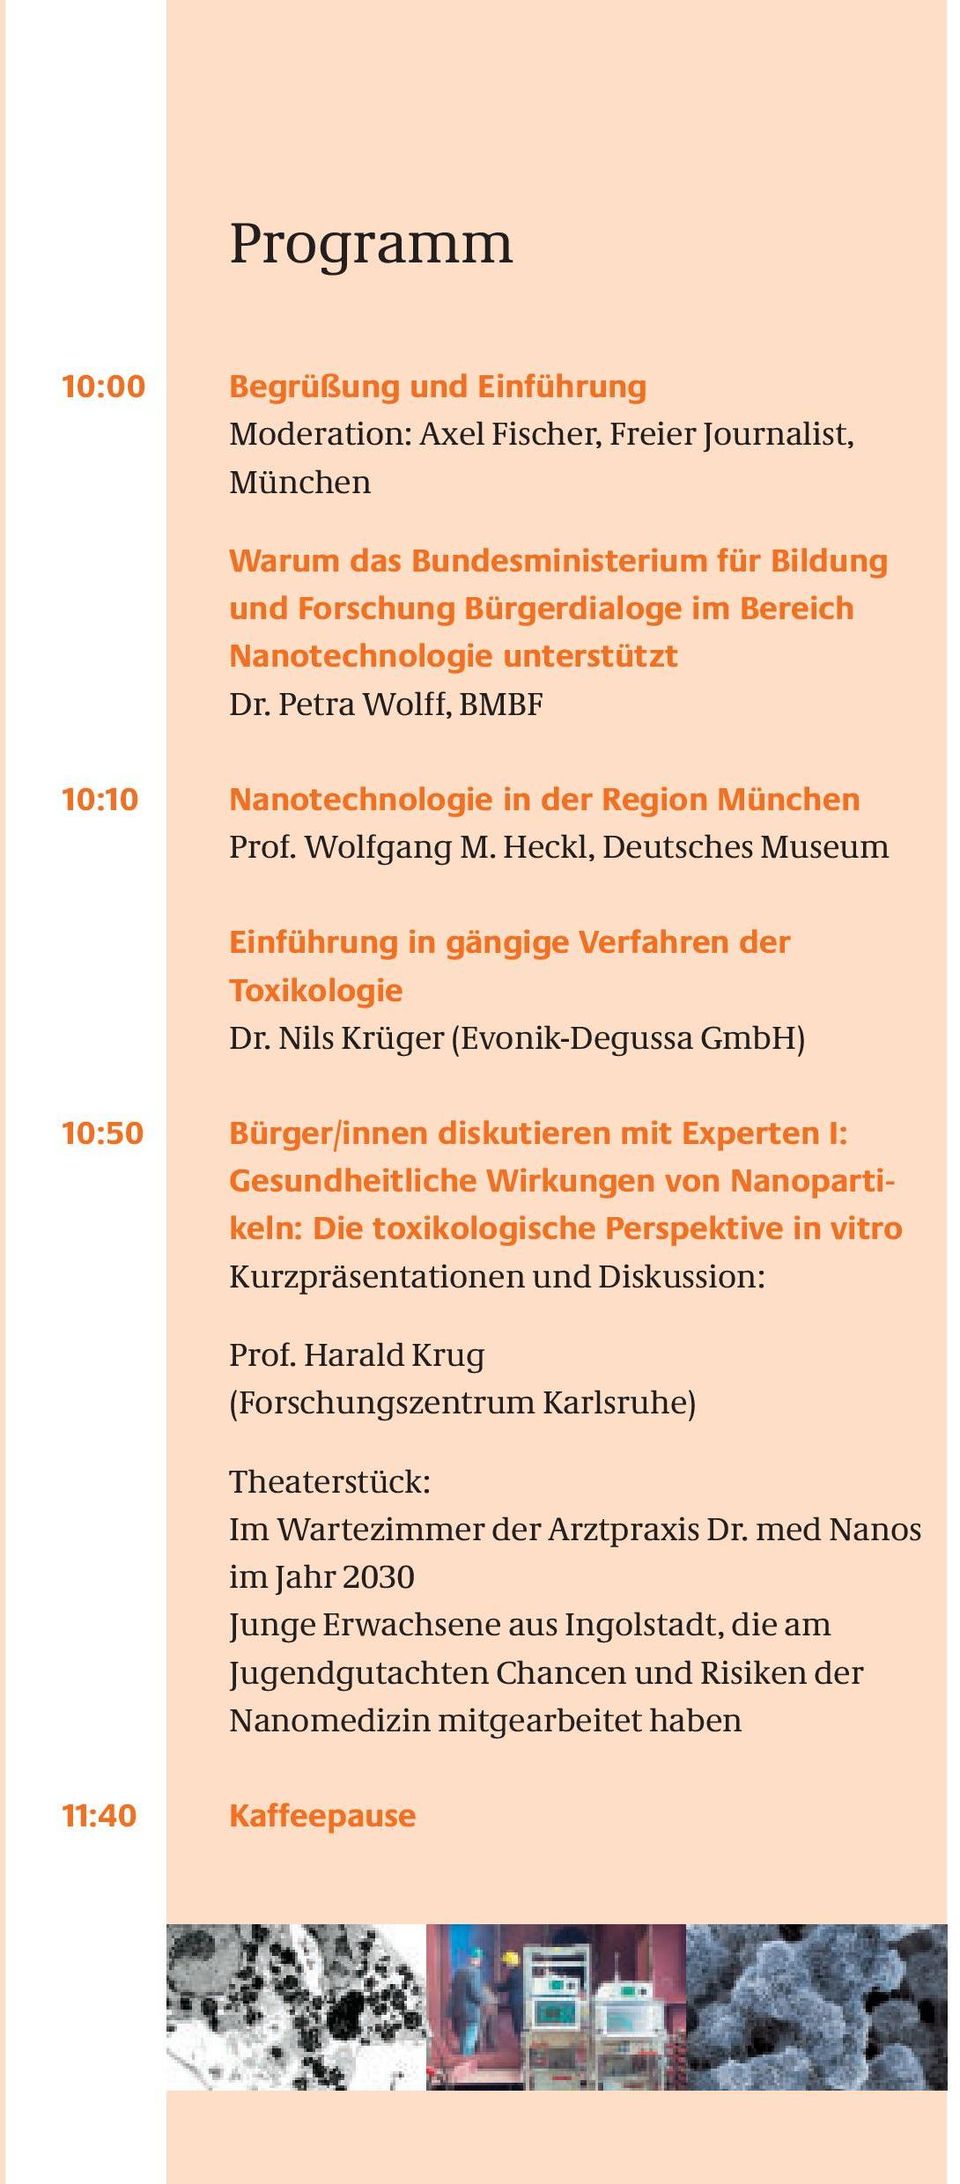 Nils Krüger (Evonik-Degussa GmbH) 10:50 Bürger/innen diskutieren mit Experten I: Gesundheitliche Wirkungen von Nano partikeln: Die toxikologische Perspektive in vitro Kurzpräsentationen und